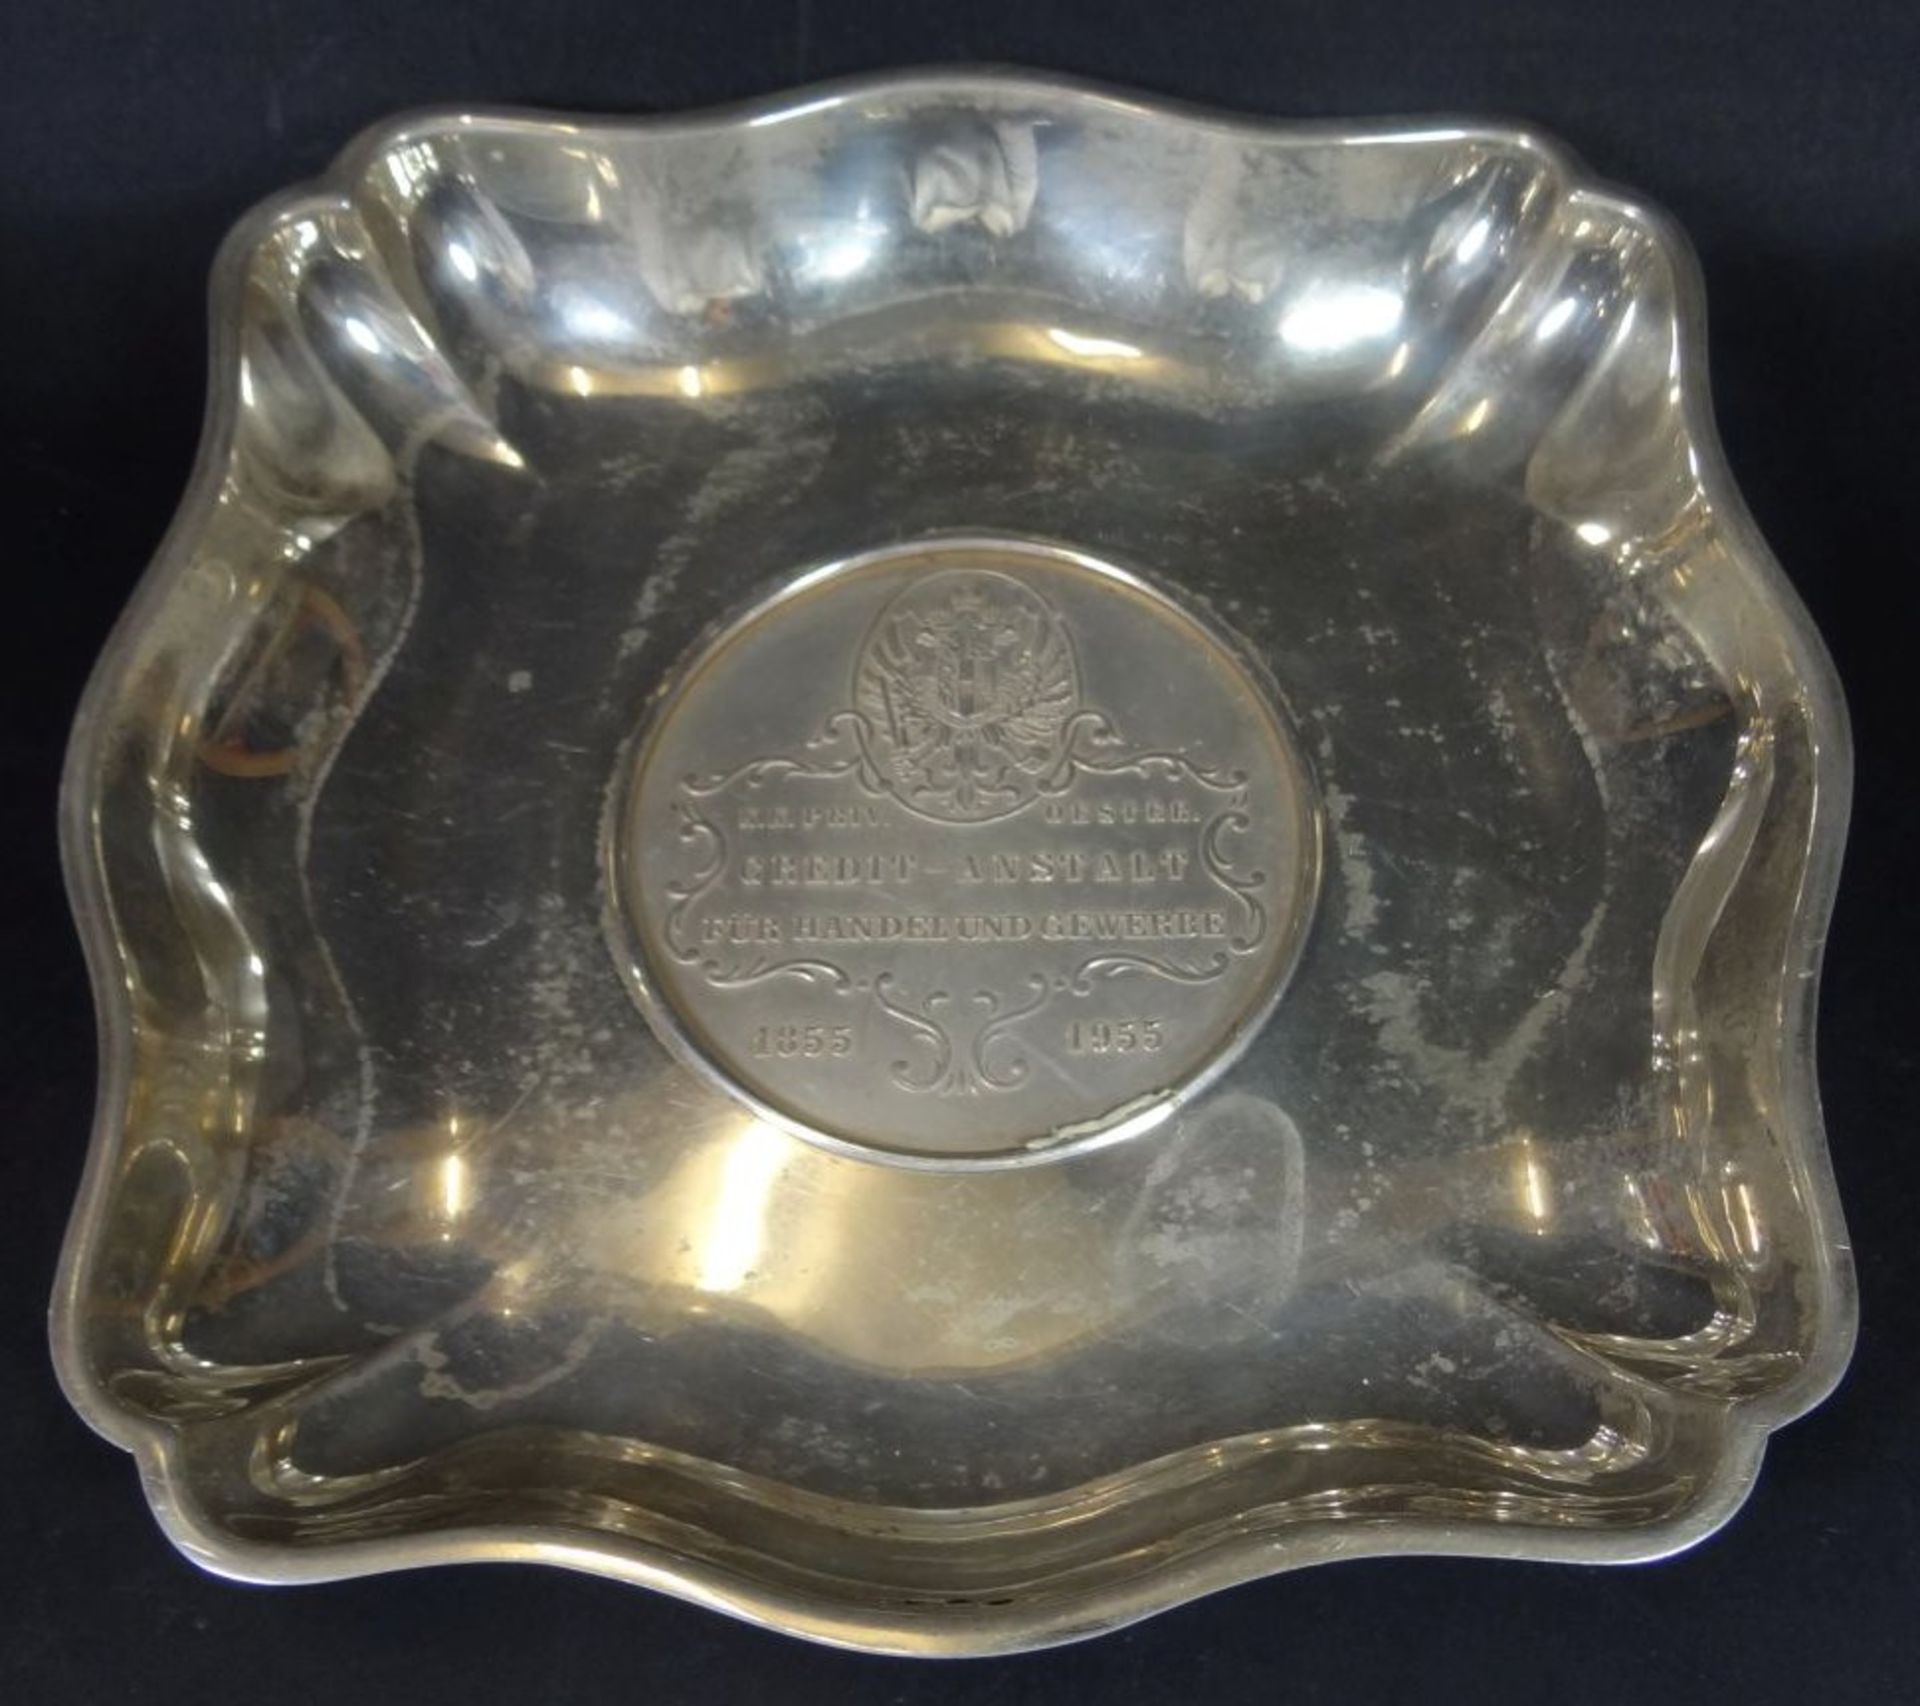 Schale mit Medaillon, Silber-800- "Credit-Anstalt 1855-1955", 19x19 cm, 290 gr.- - -22.61 % buyer'